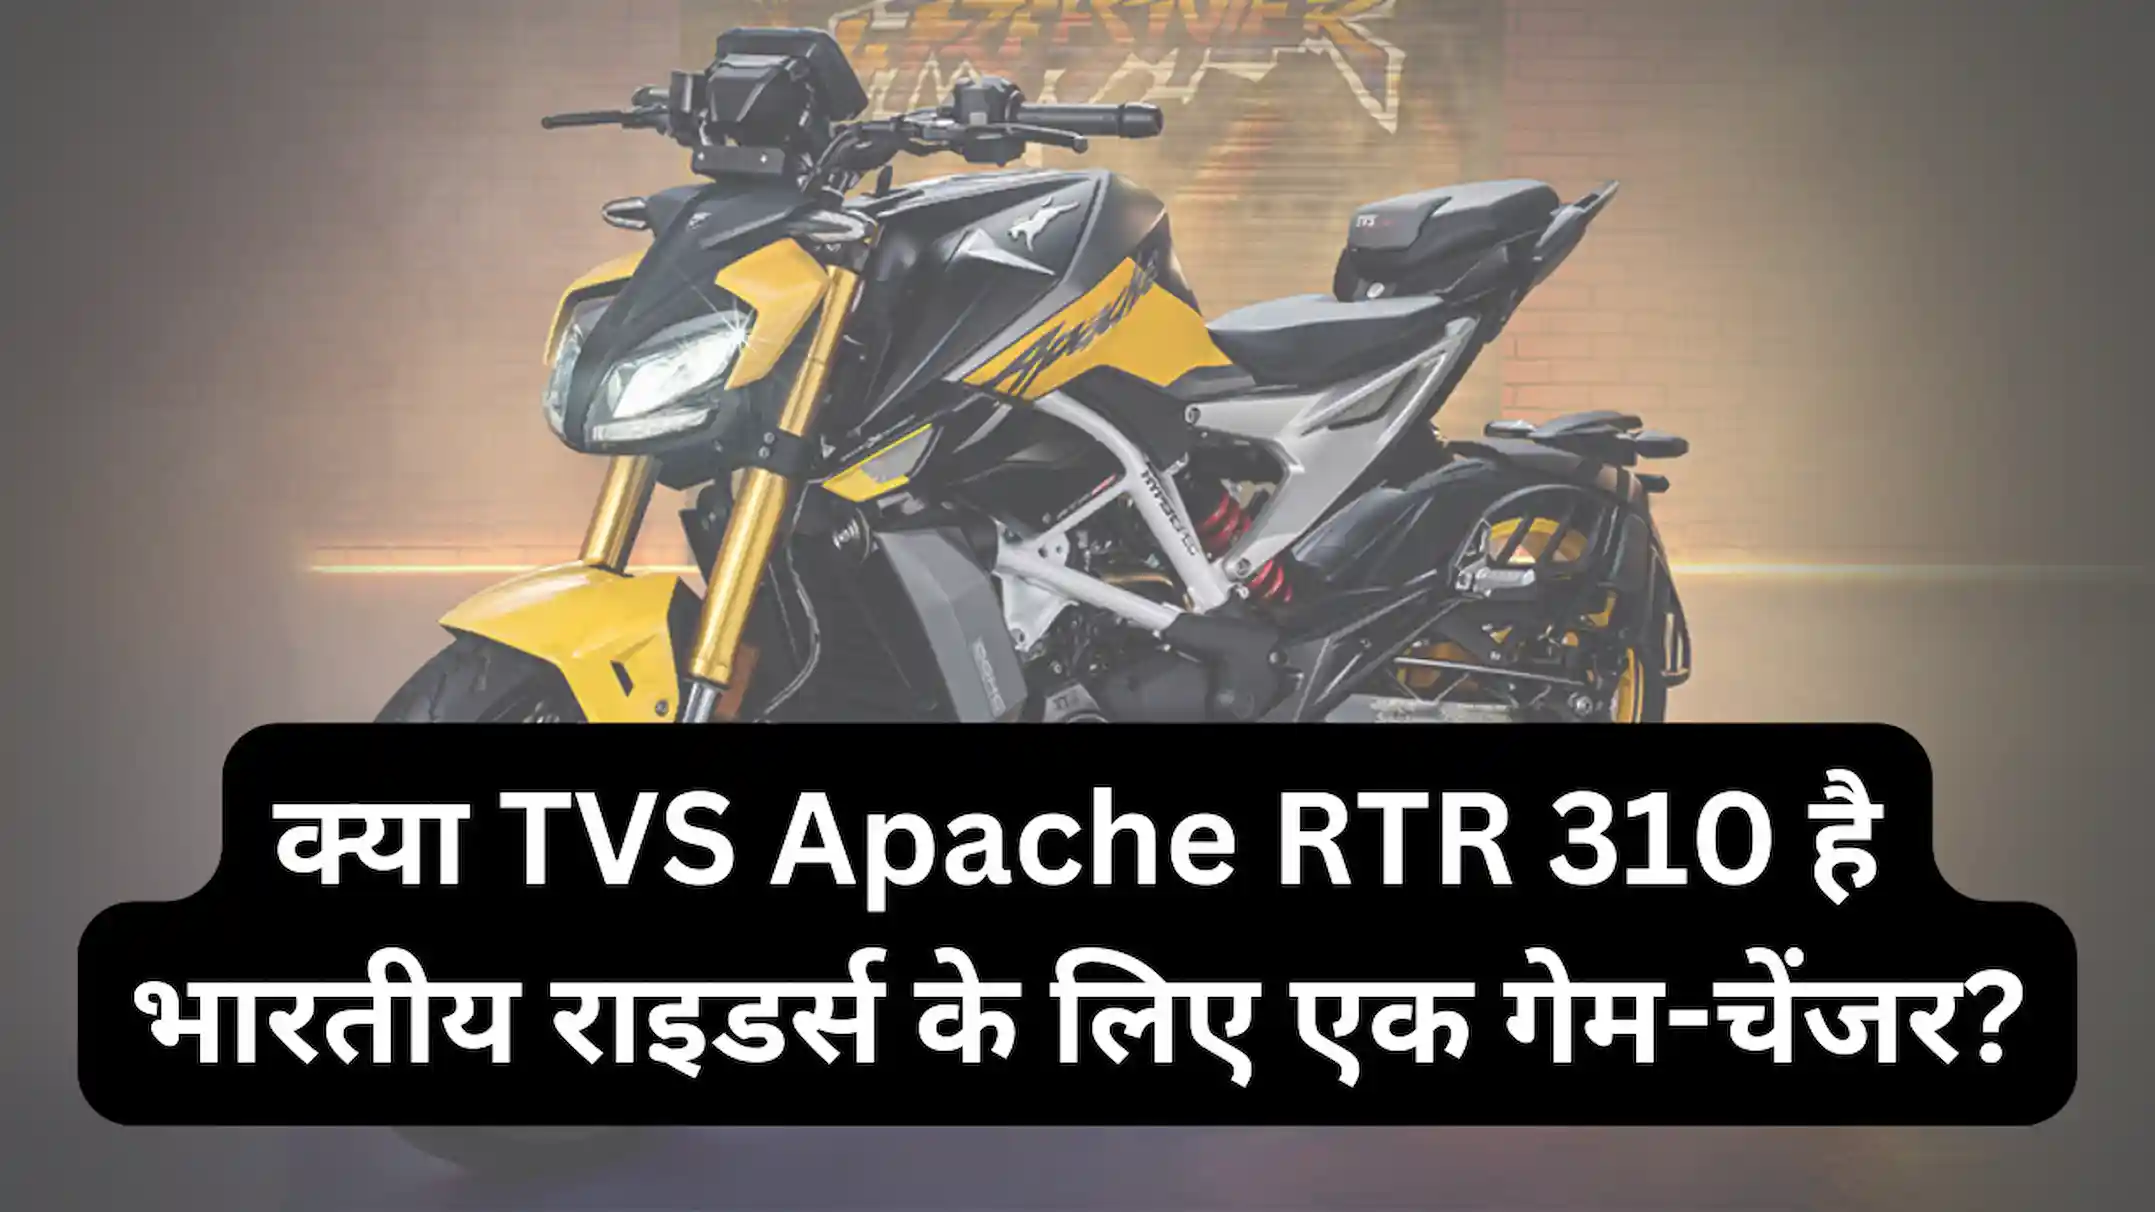 क्या TVS Apache RTR 310 है भारतीय राइडर्स के लिए एक गेम-चेंजर?